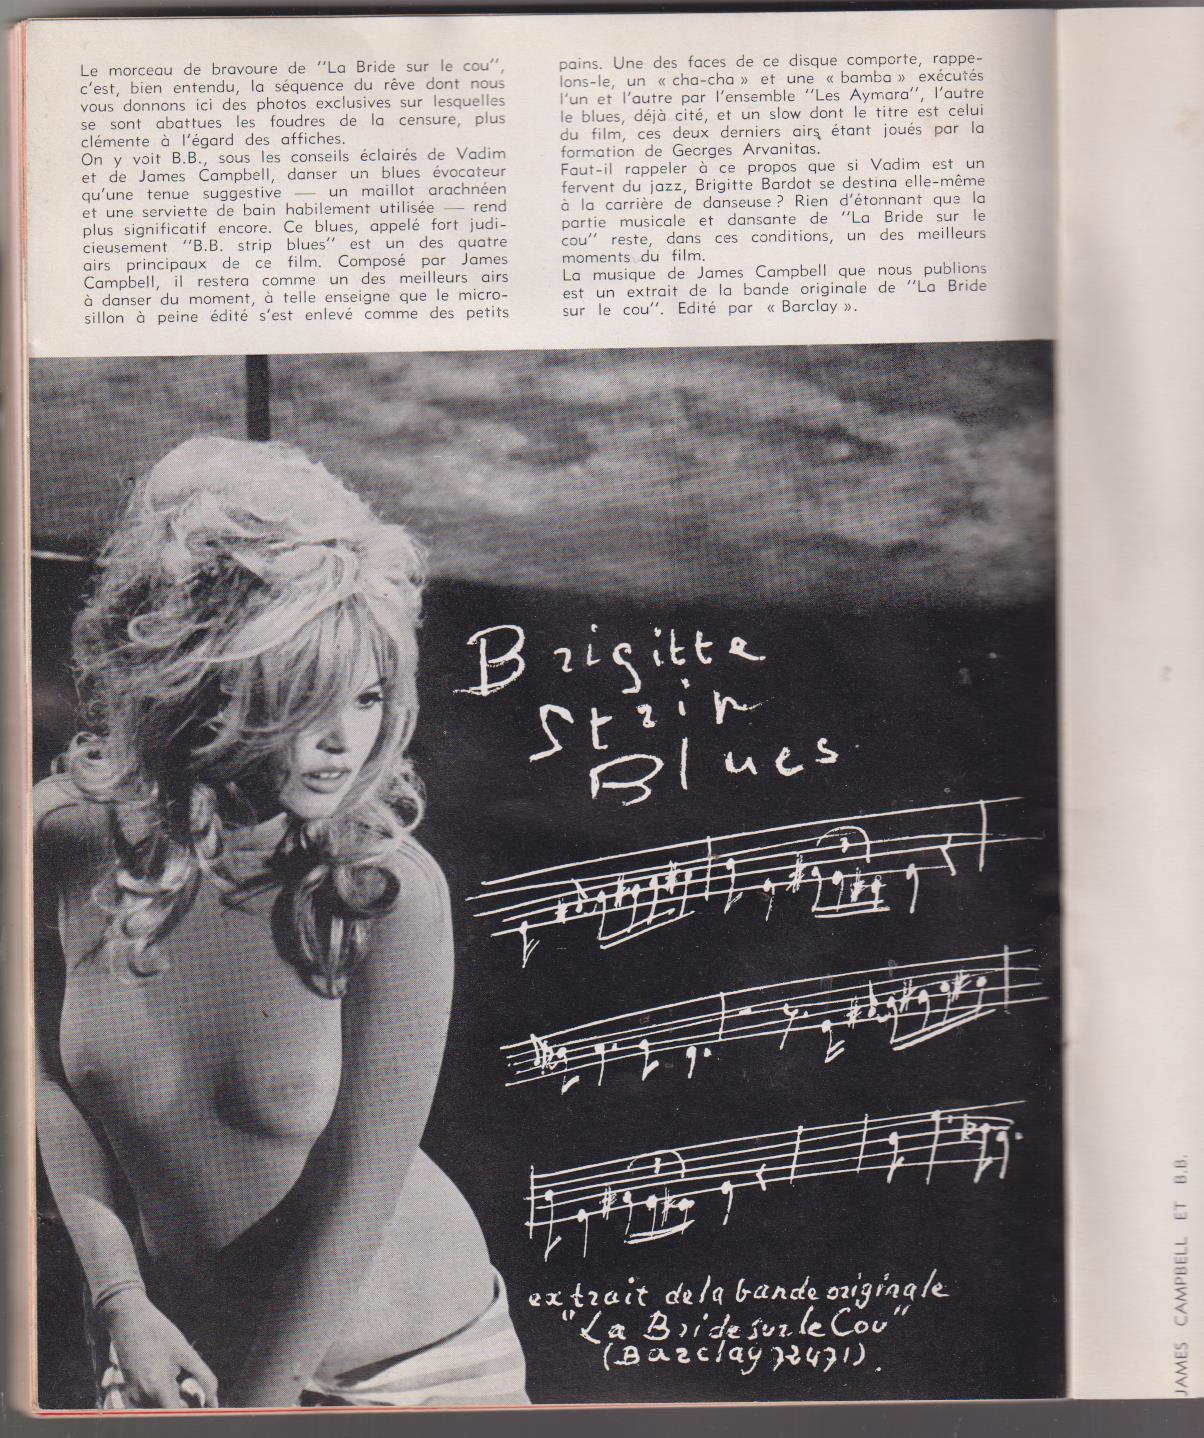 Stop. Revista Francesa. 6 Ejemplares del 1 al 6. encuadernados de editorial en un tomos. 1965